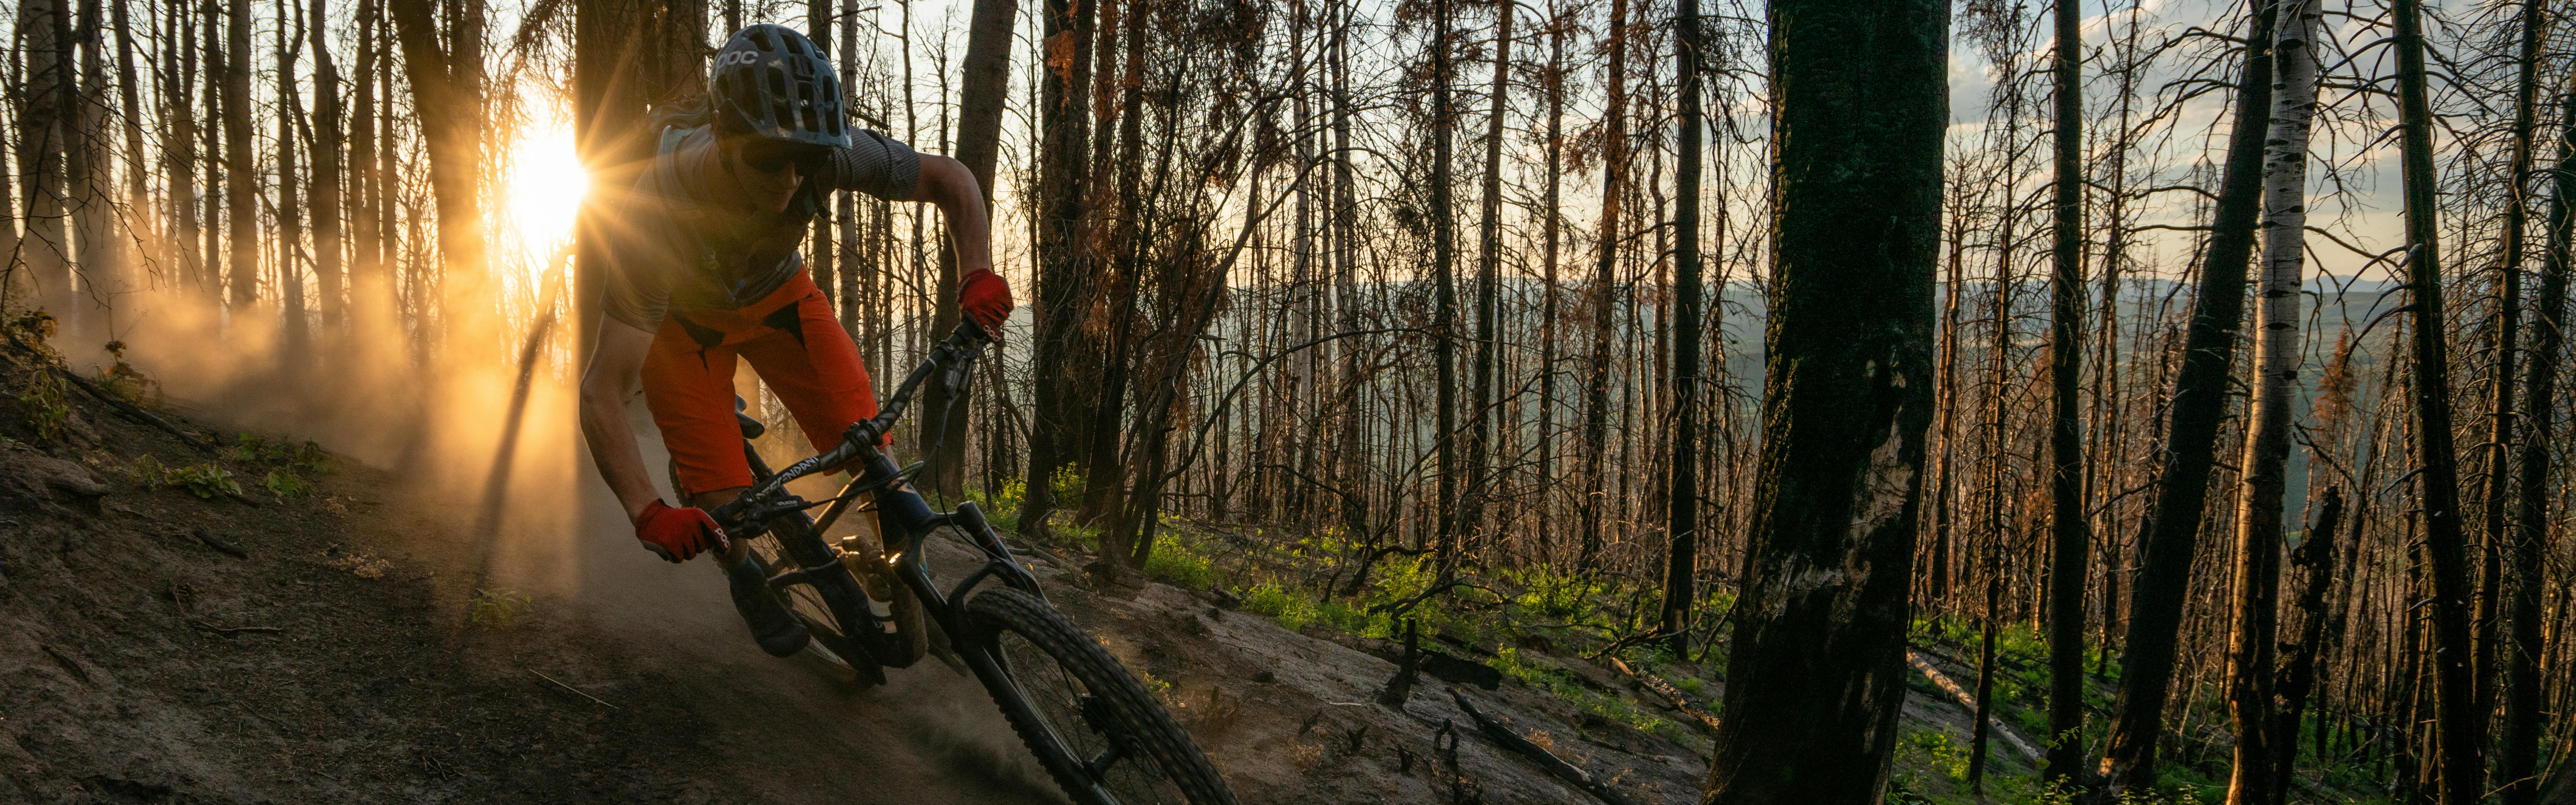 Man mountain biking down a dirt path through the forest, the sun setting behind him.